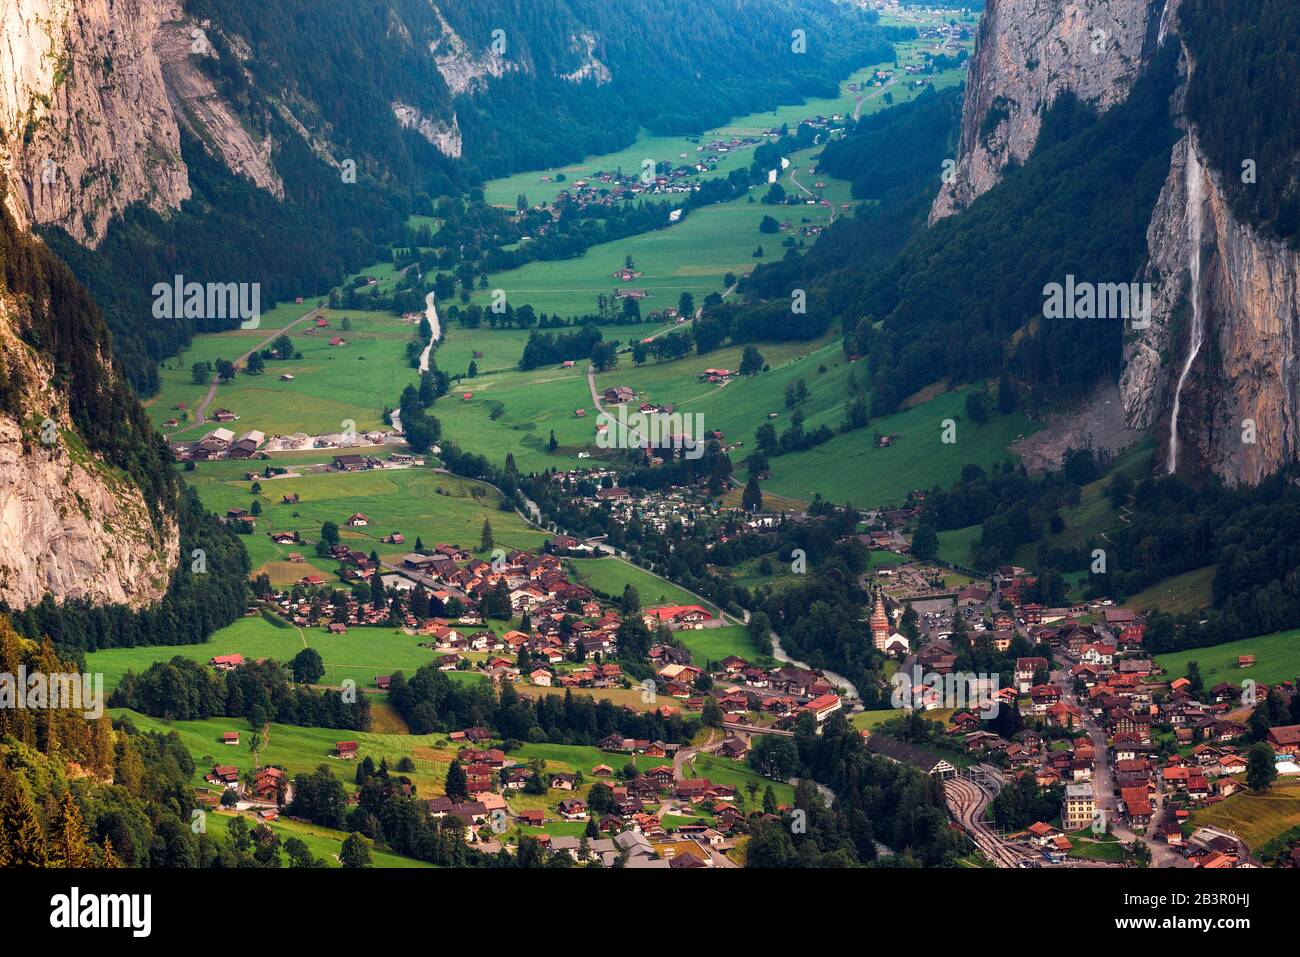 Vallée de Lauterbrunnen dans les Alpes suisses avec une chute d'eau emblématique Banque D'Images